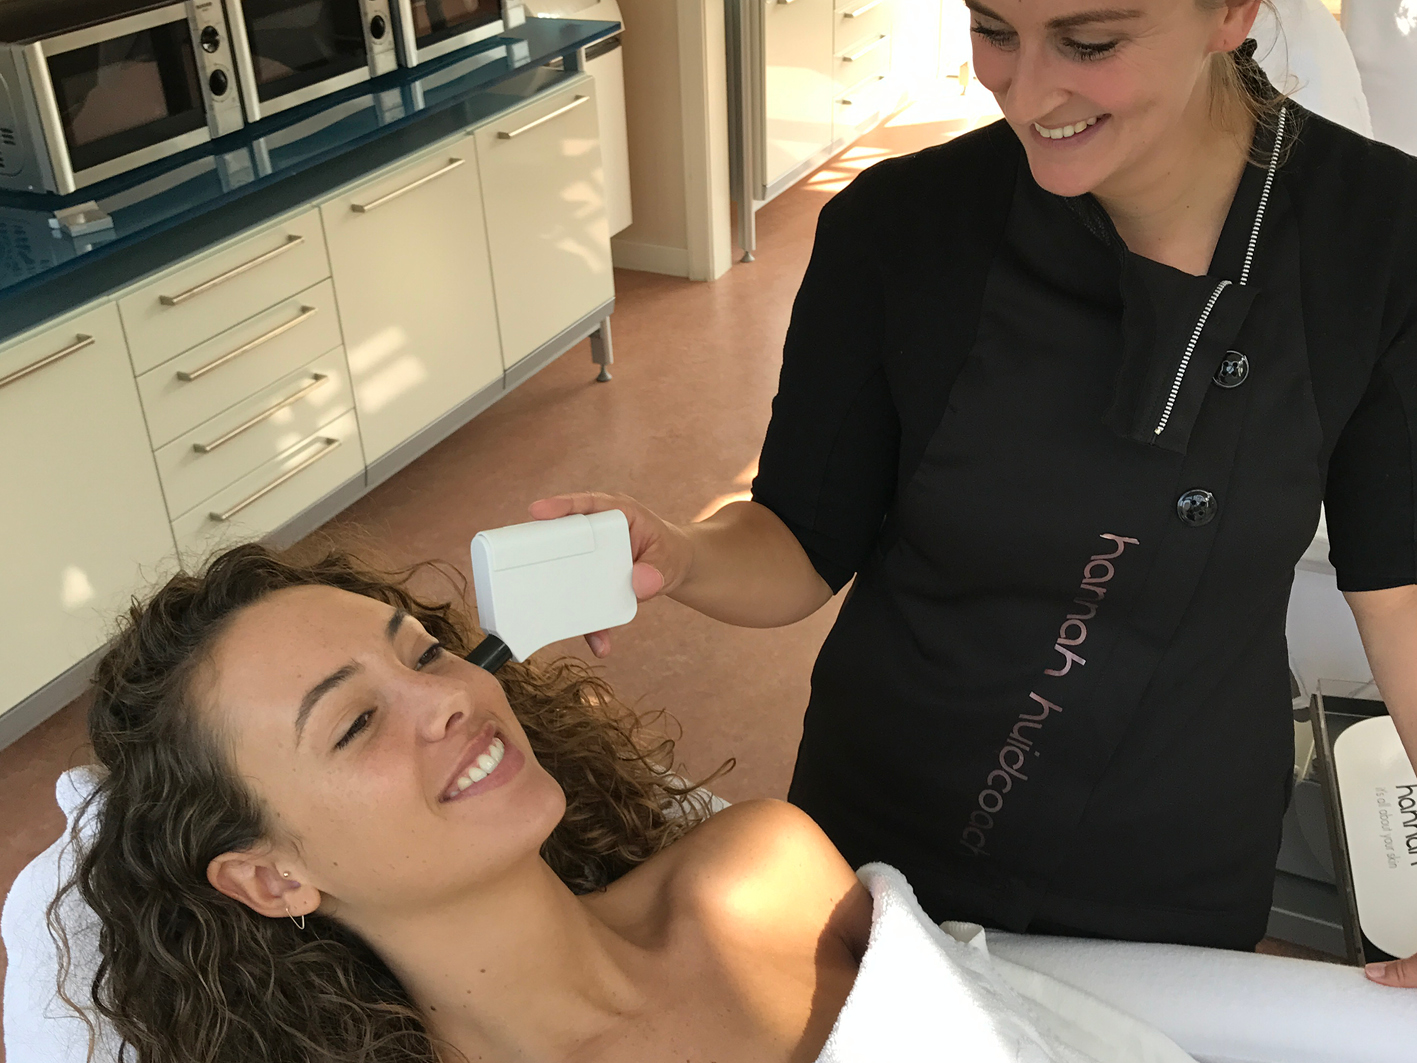 Zoey Ivory op bezoek bij huidcoach Amber - Zoey Ivory Miss Nederland 2016 - kom alles te weten over de huid - huidverbetering - hannah huidcoach